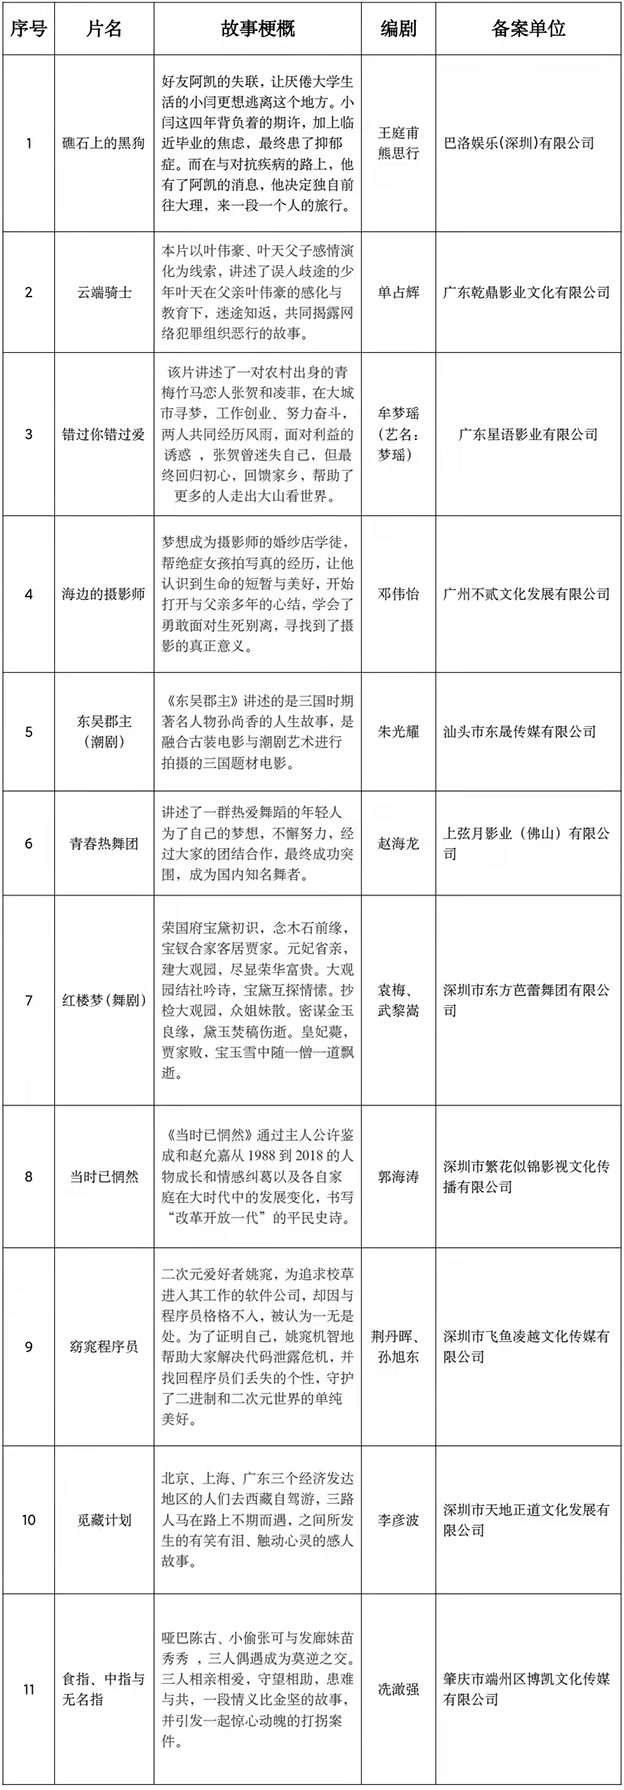 2月全国电影剧本备案立项198部、其中广东批准立项15部